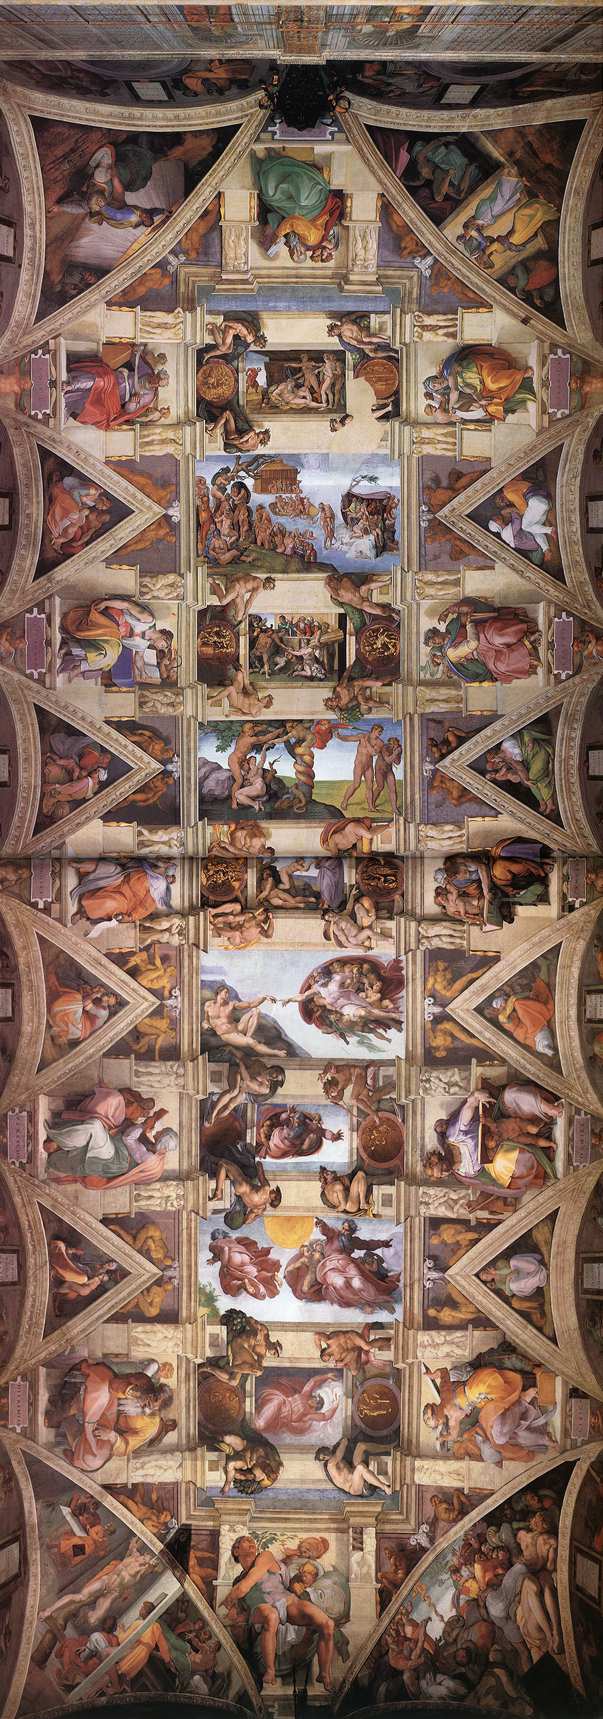 Al momento stai visualizzando Michelangelo nella volta della Cappella Sistina